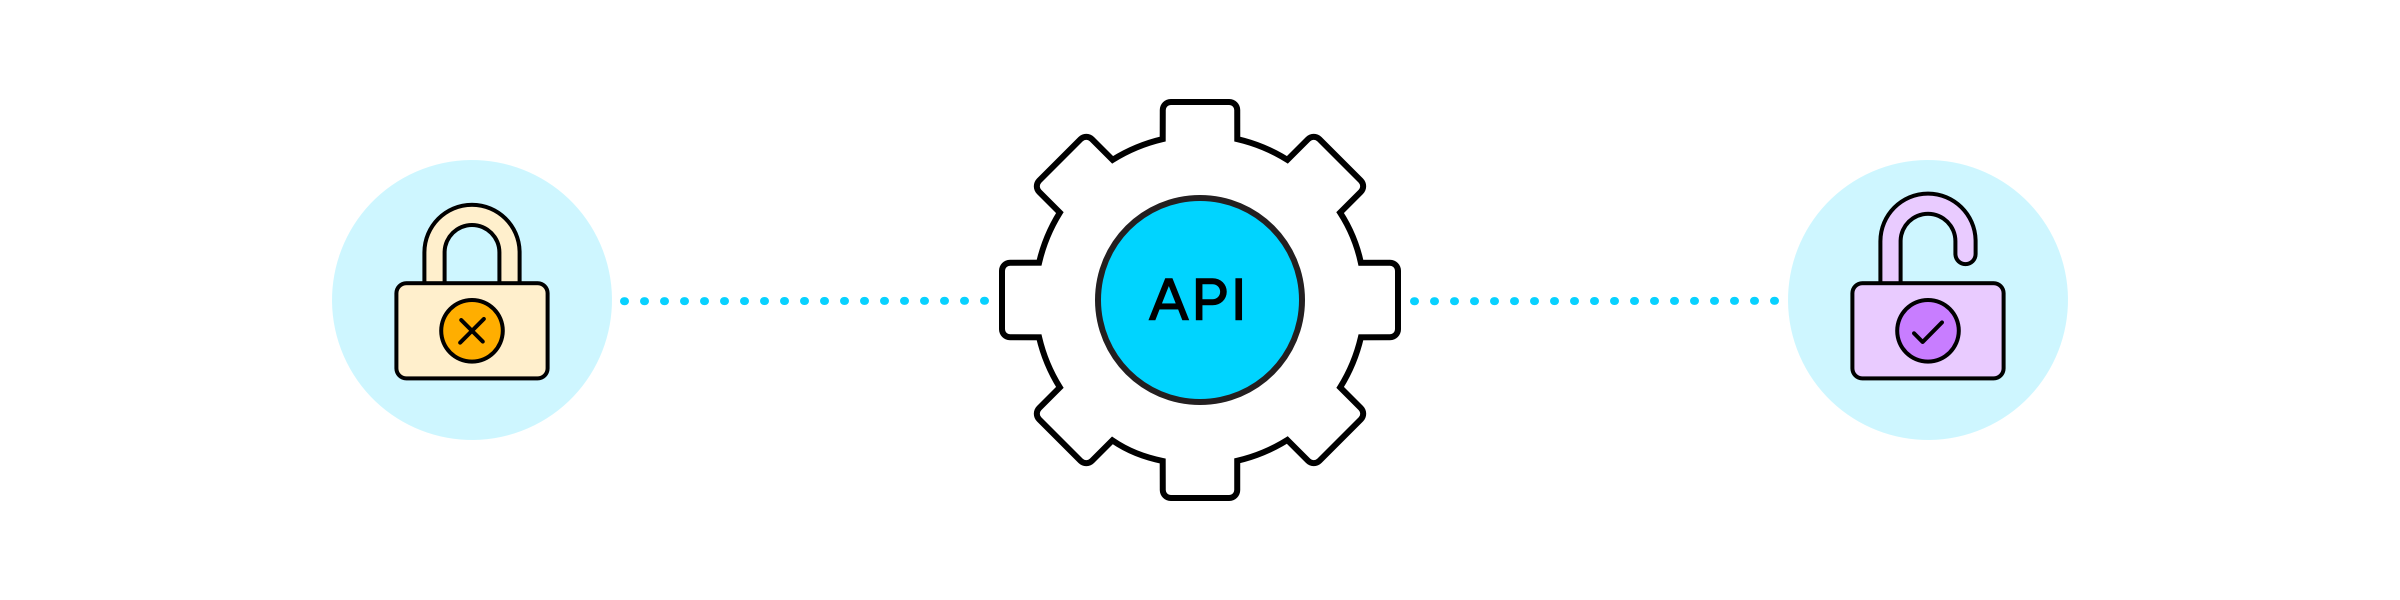 Узнать апи. Basic аутентификация. API. API вайлдберриз как выглядит JWT.